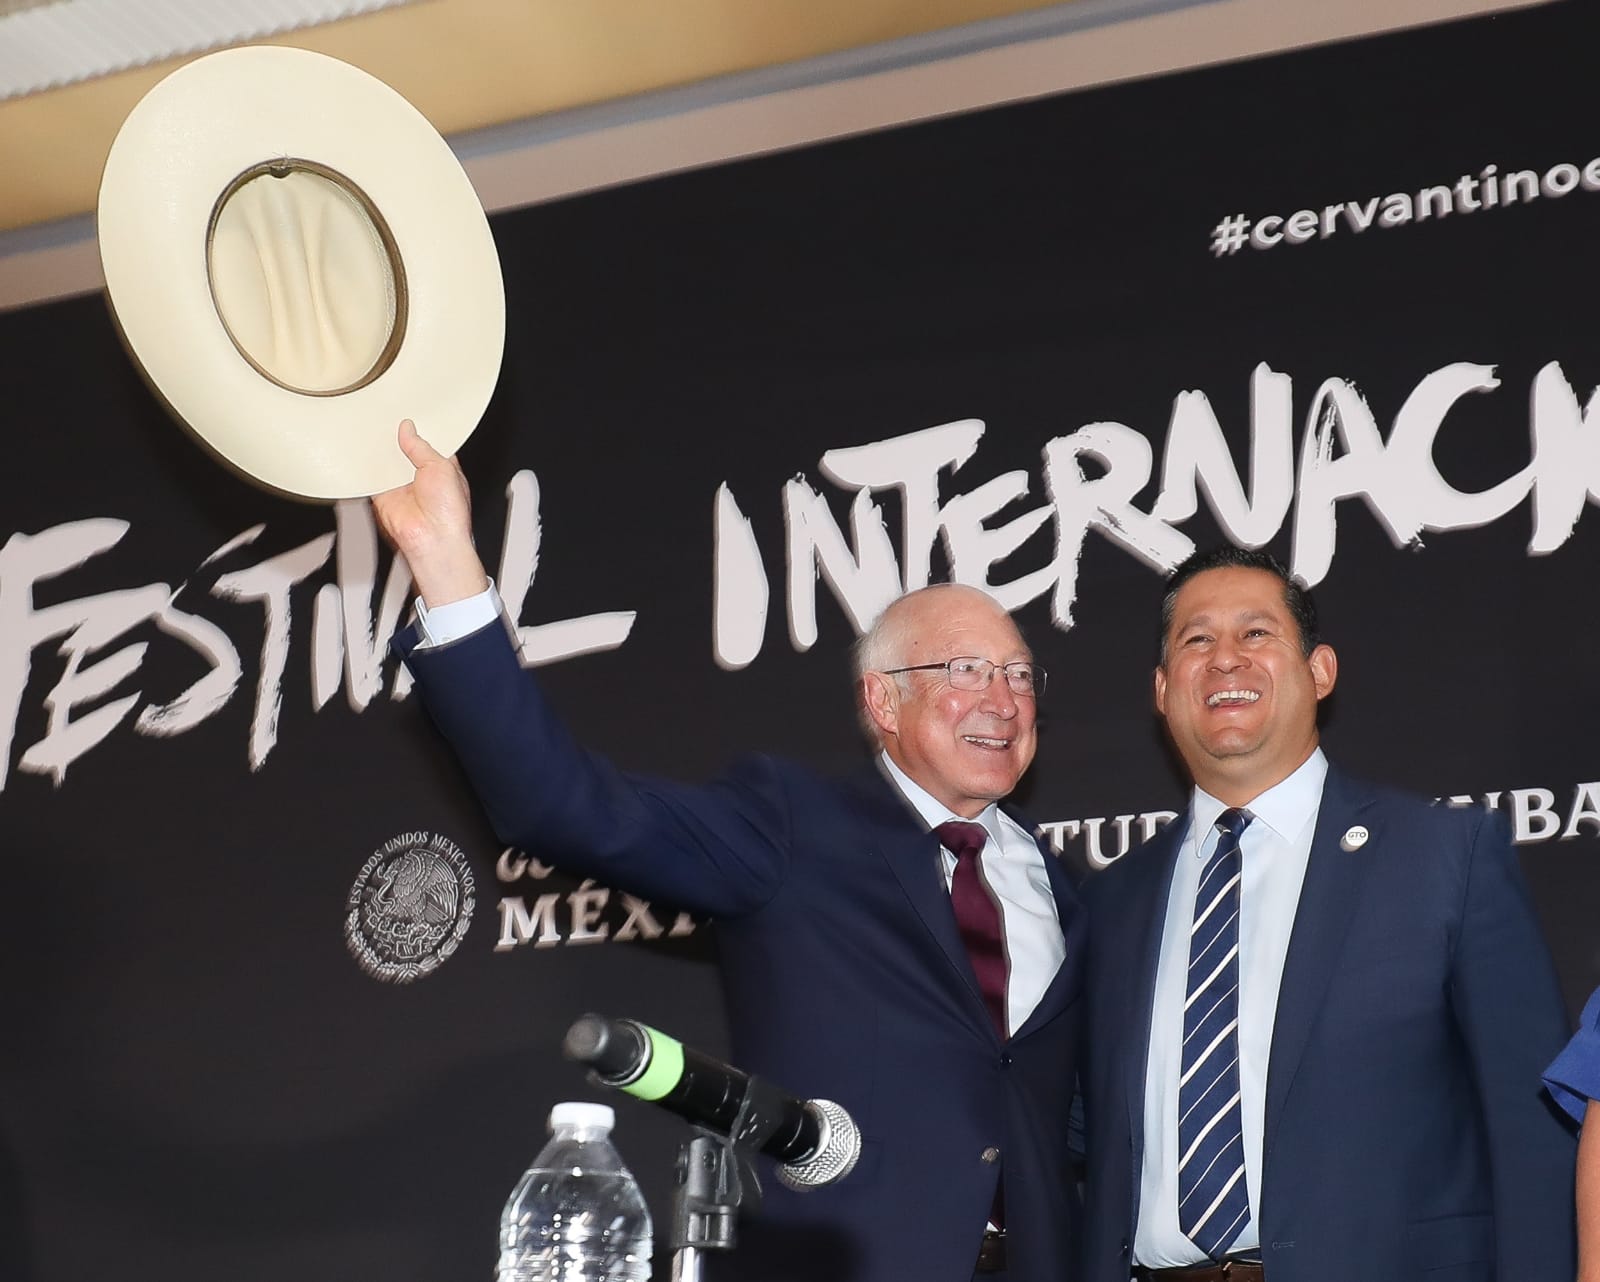 Estados Unidos es un país amigo y socio de Guanajuato: Diego Sinhue Rodríguez